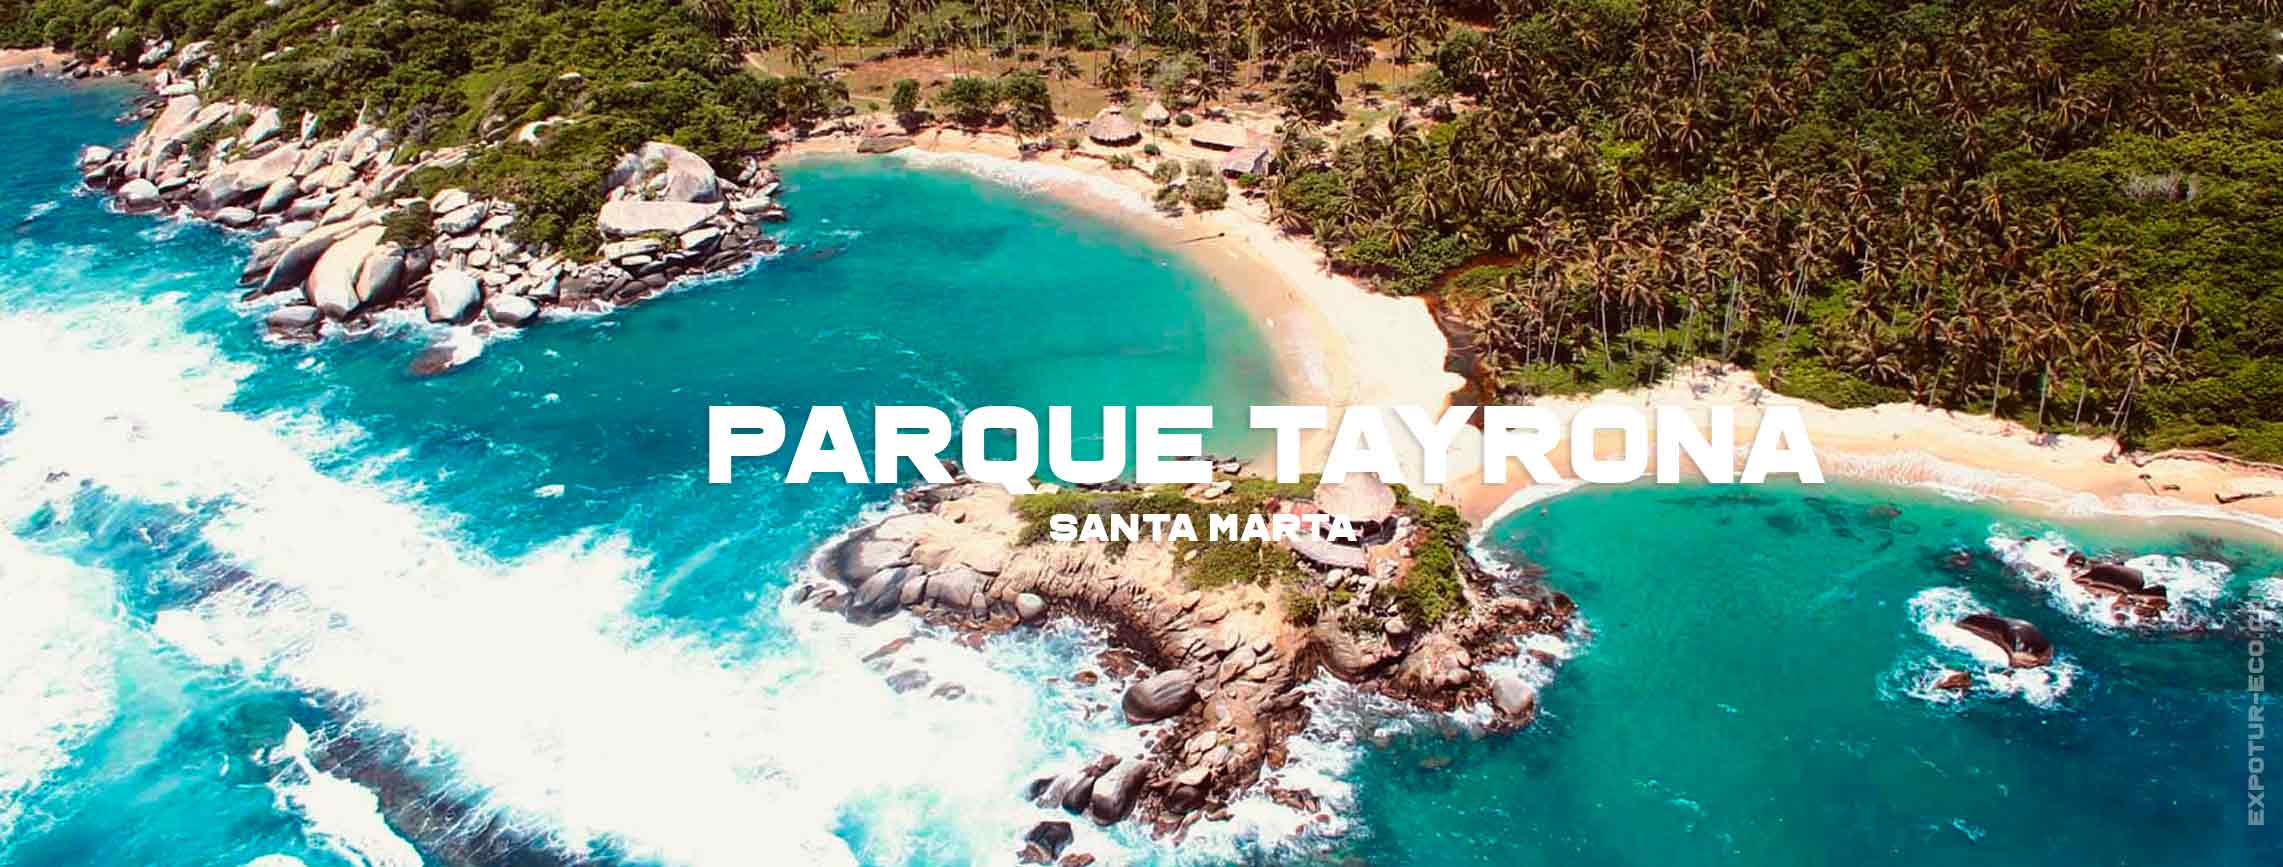 parque-tayrona-santa-marta-blog-semana-santa-expotur-lugar-turistico-colombia